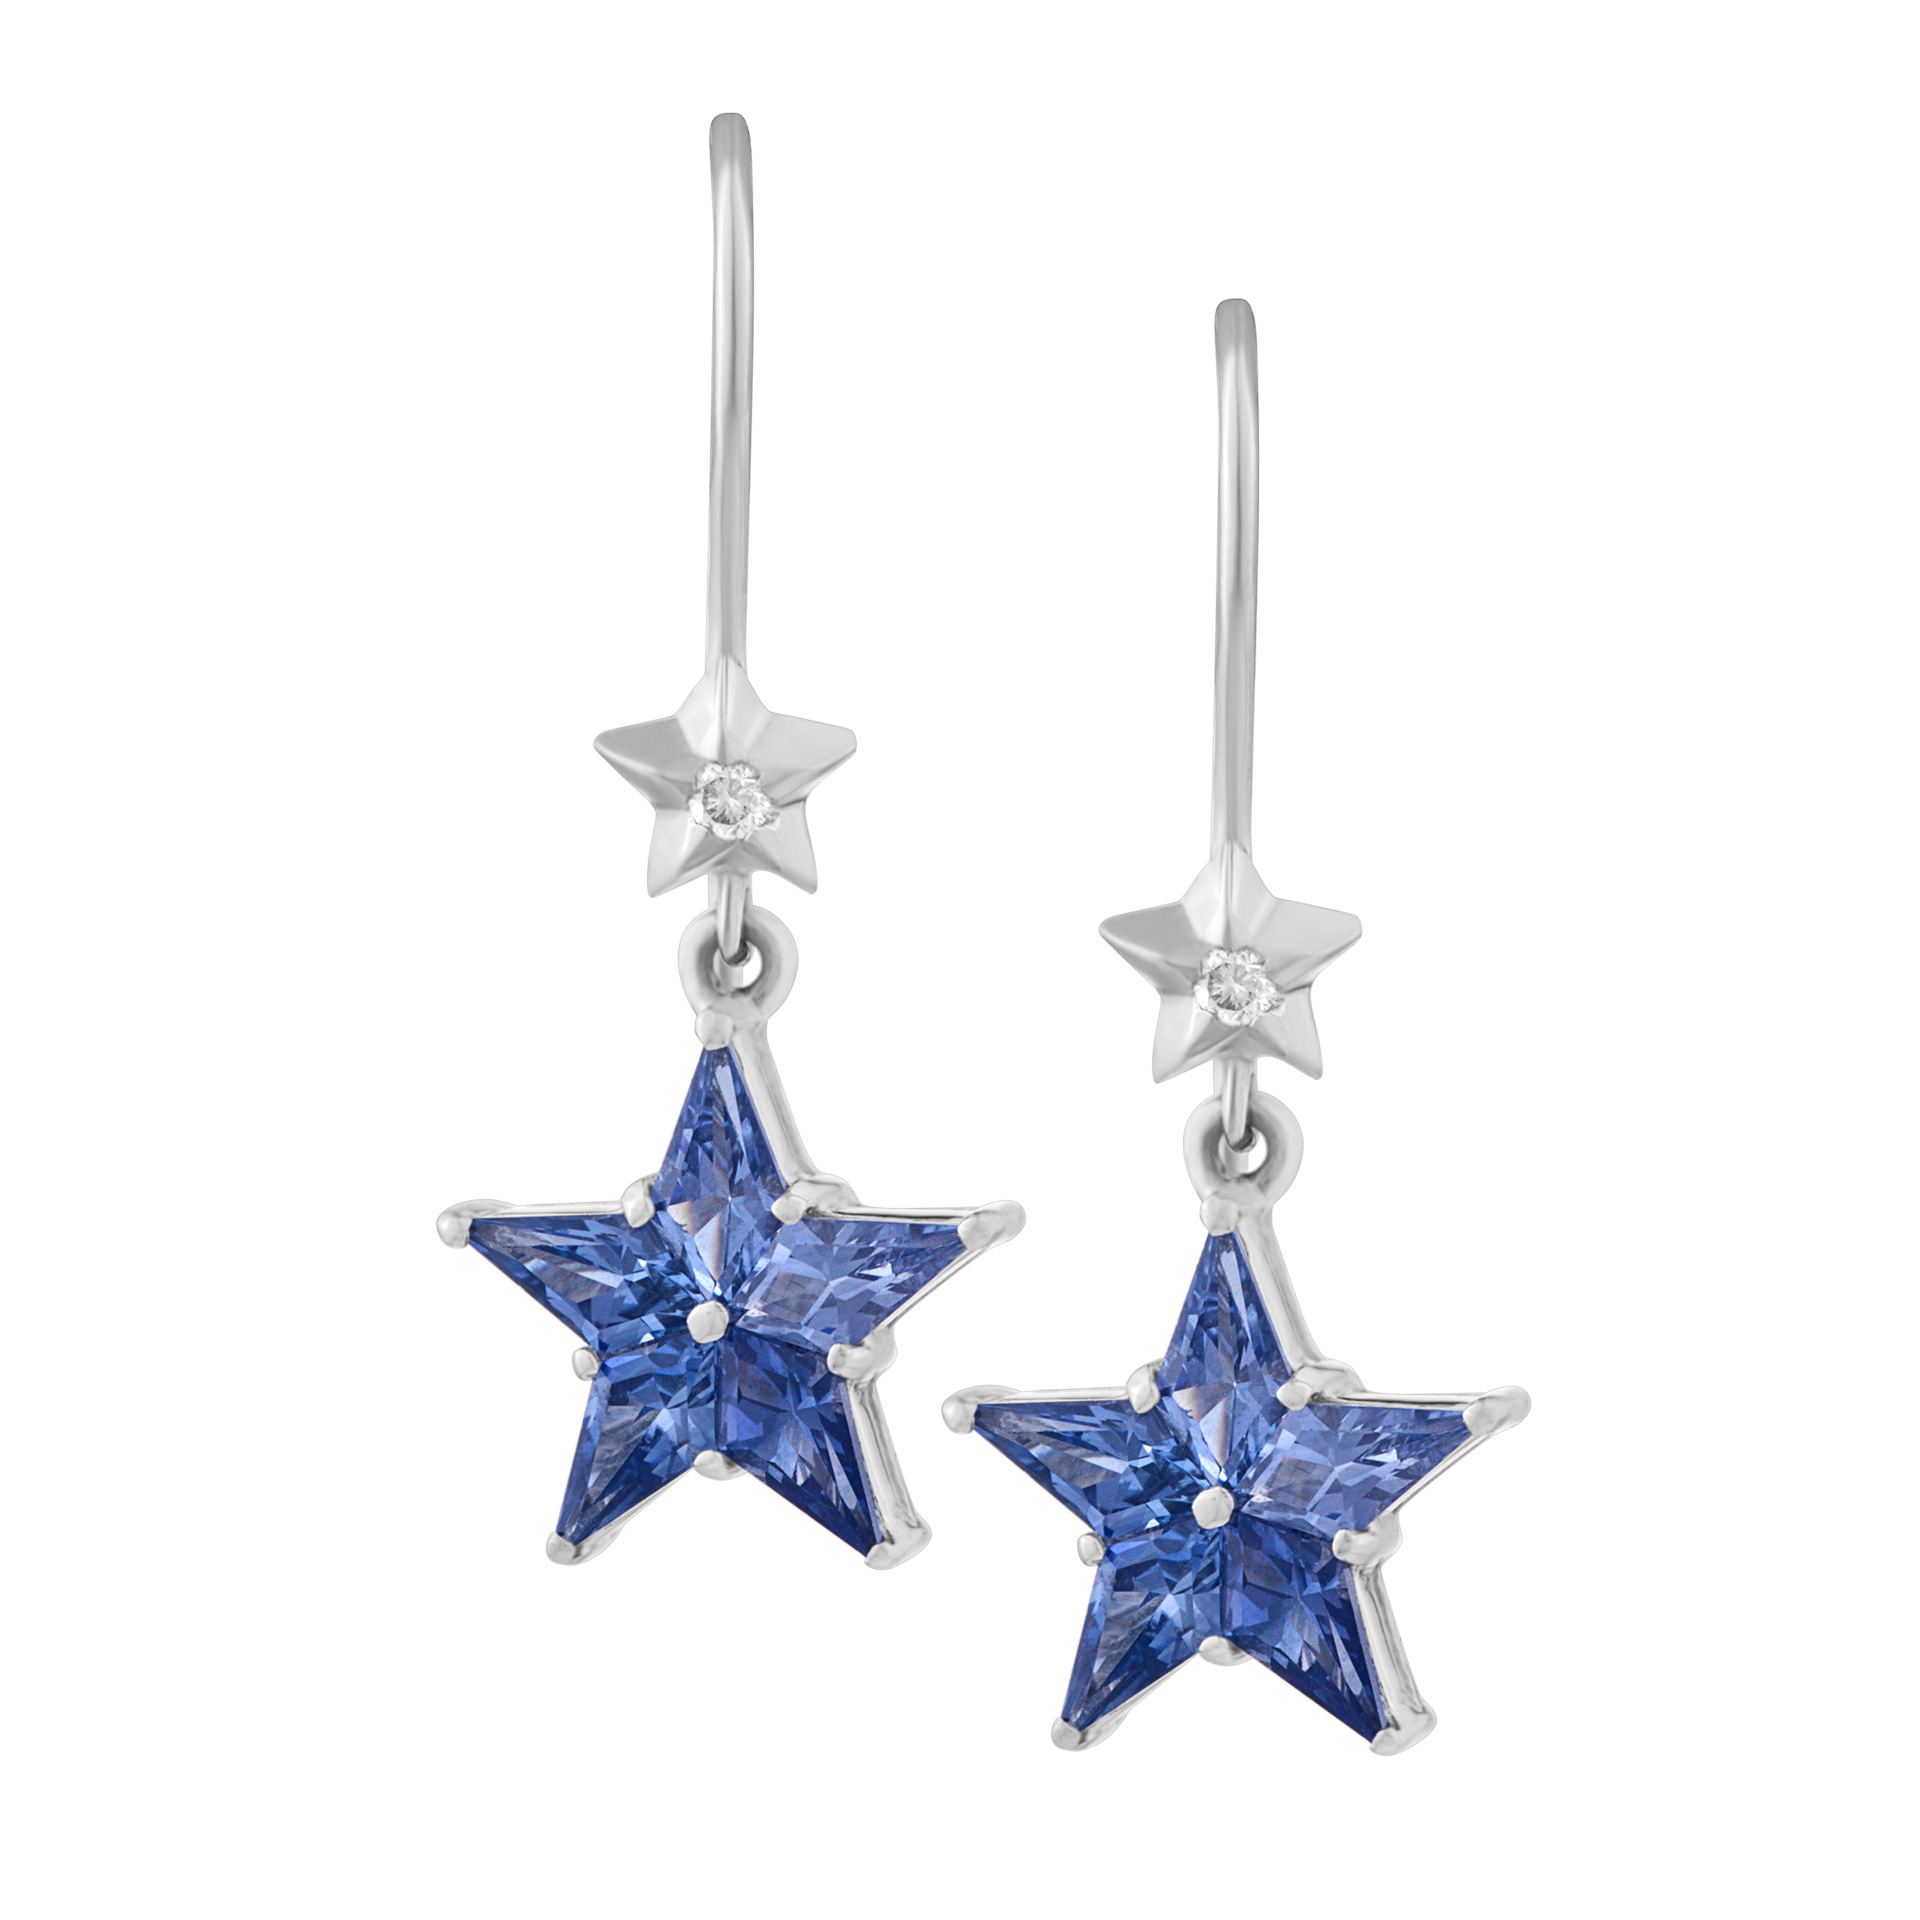 Blue sapphire star drop earrings